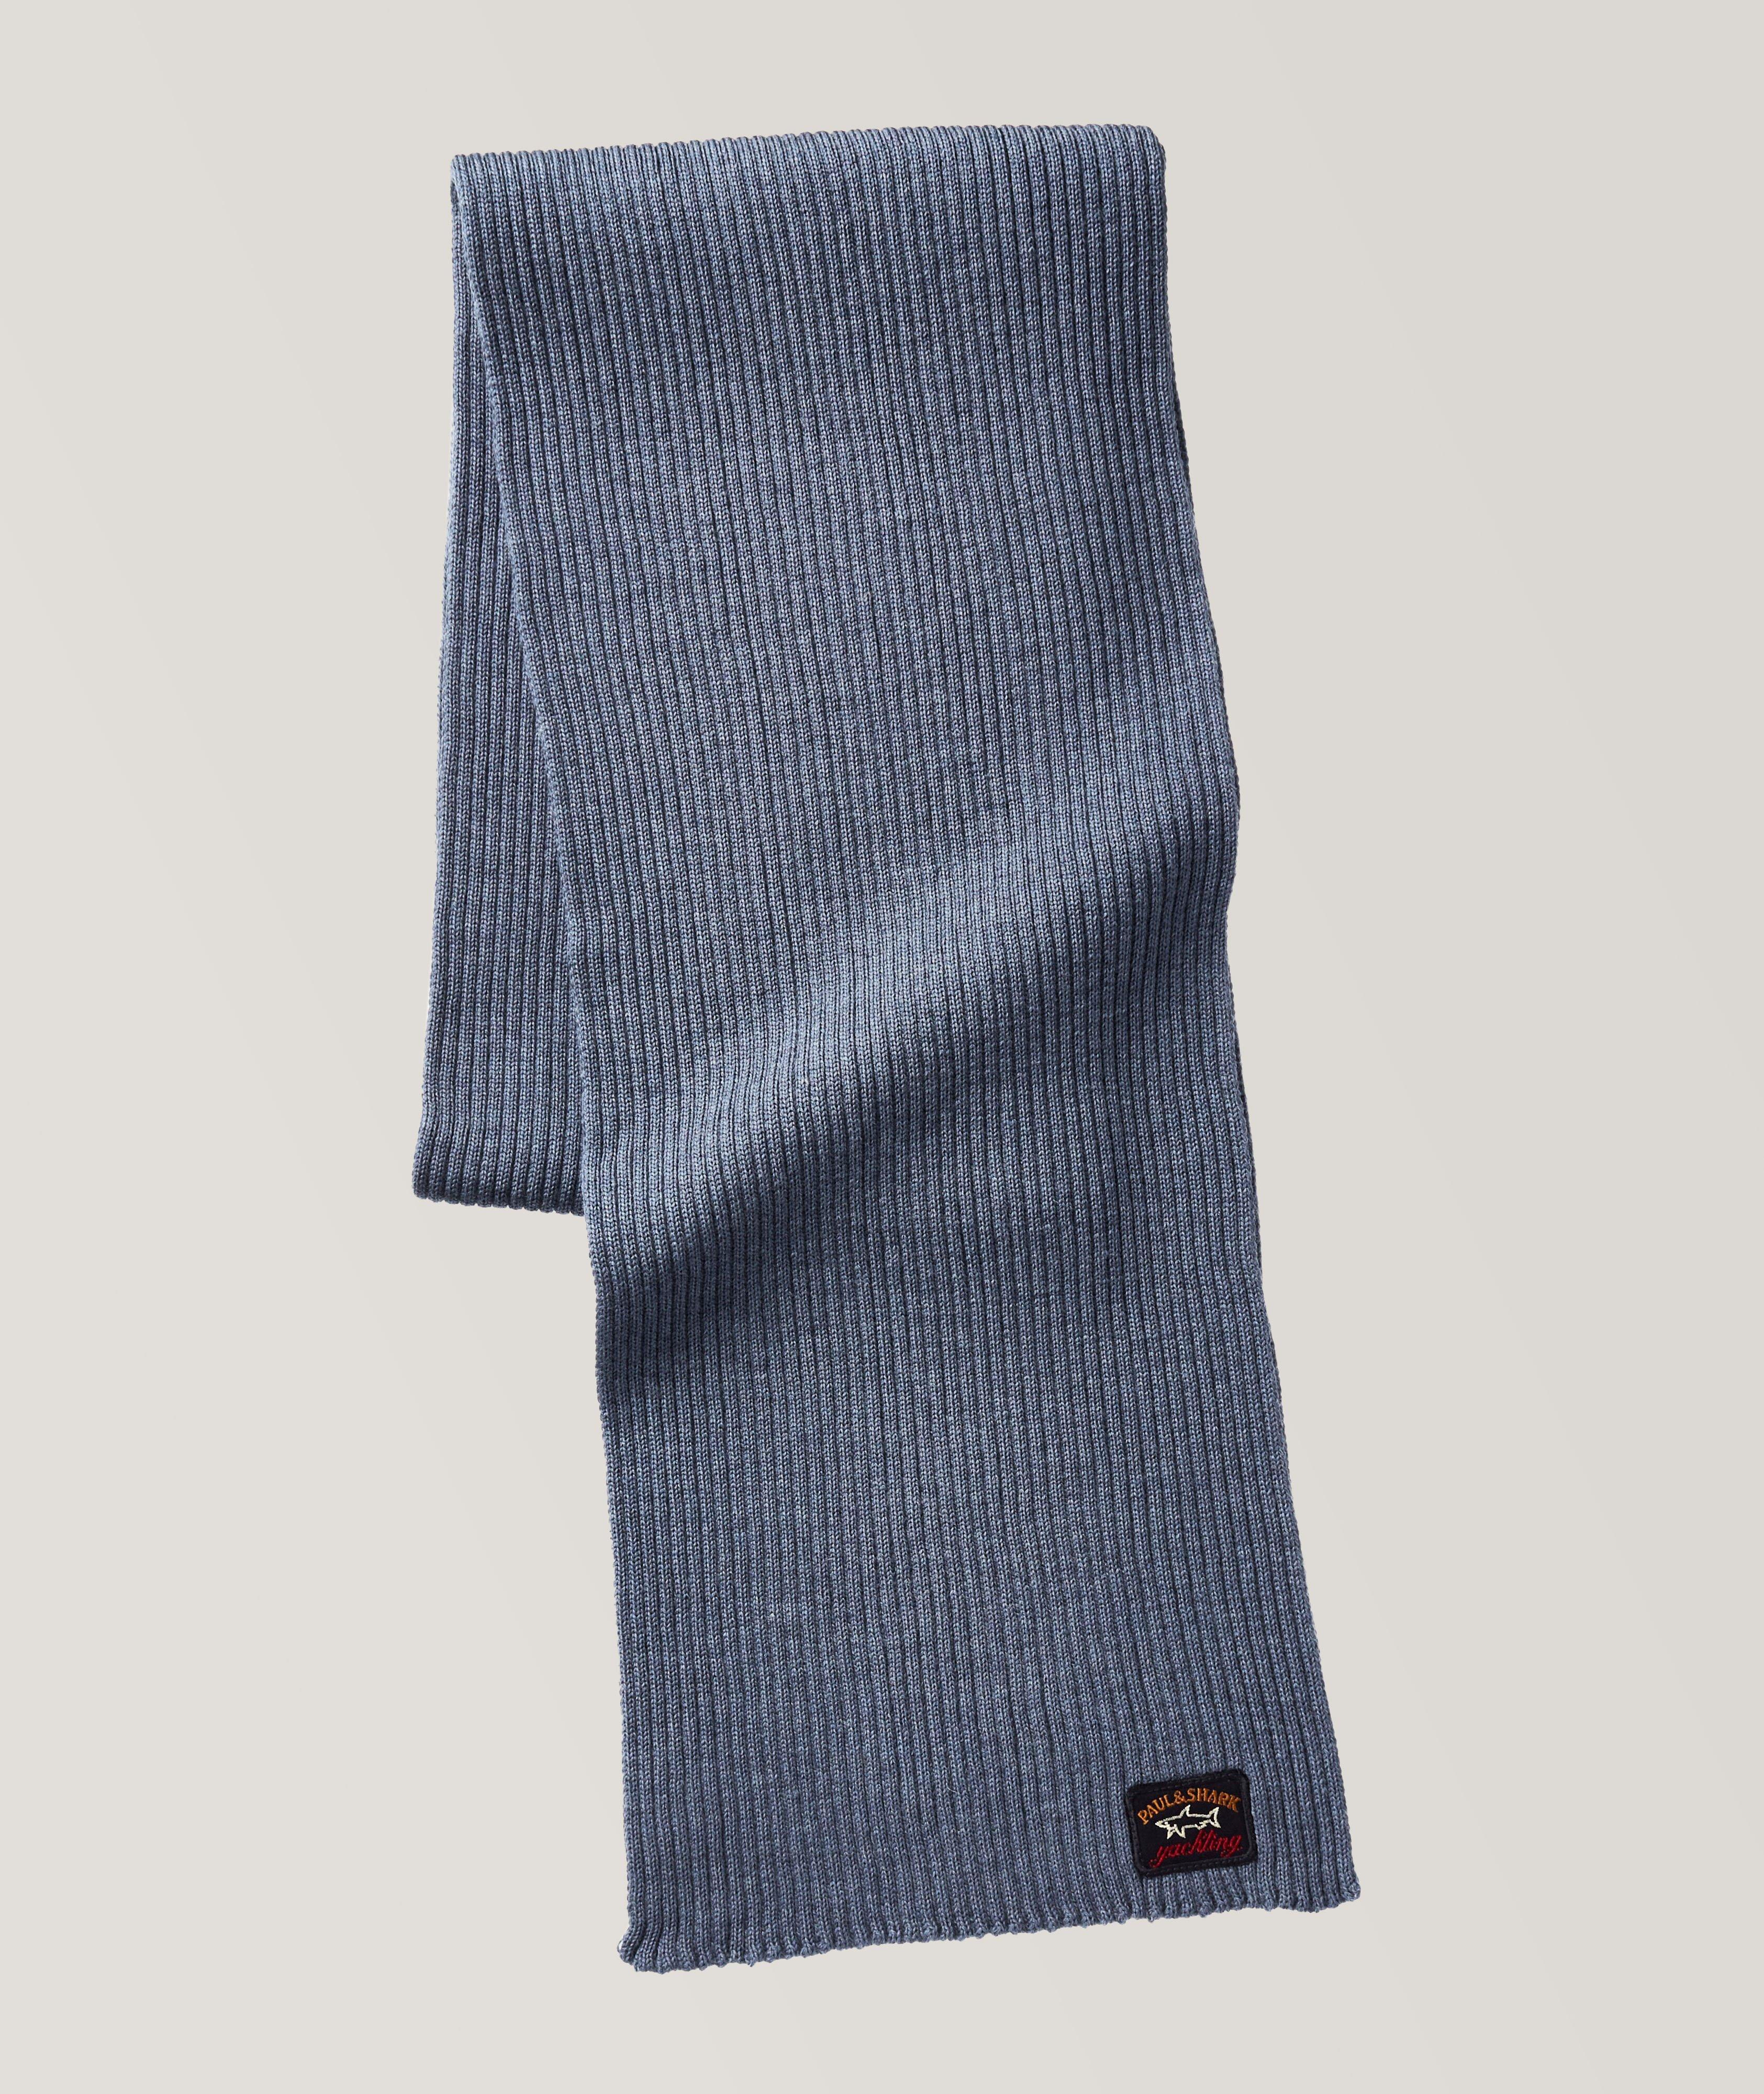 Écharpe en tricot côtelé de laine avec logo image 0